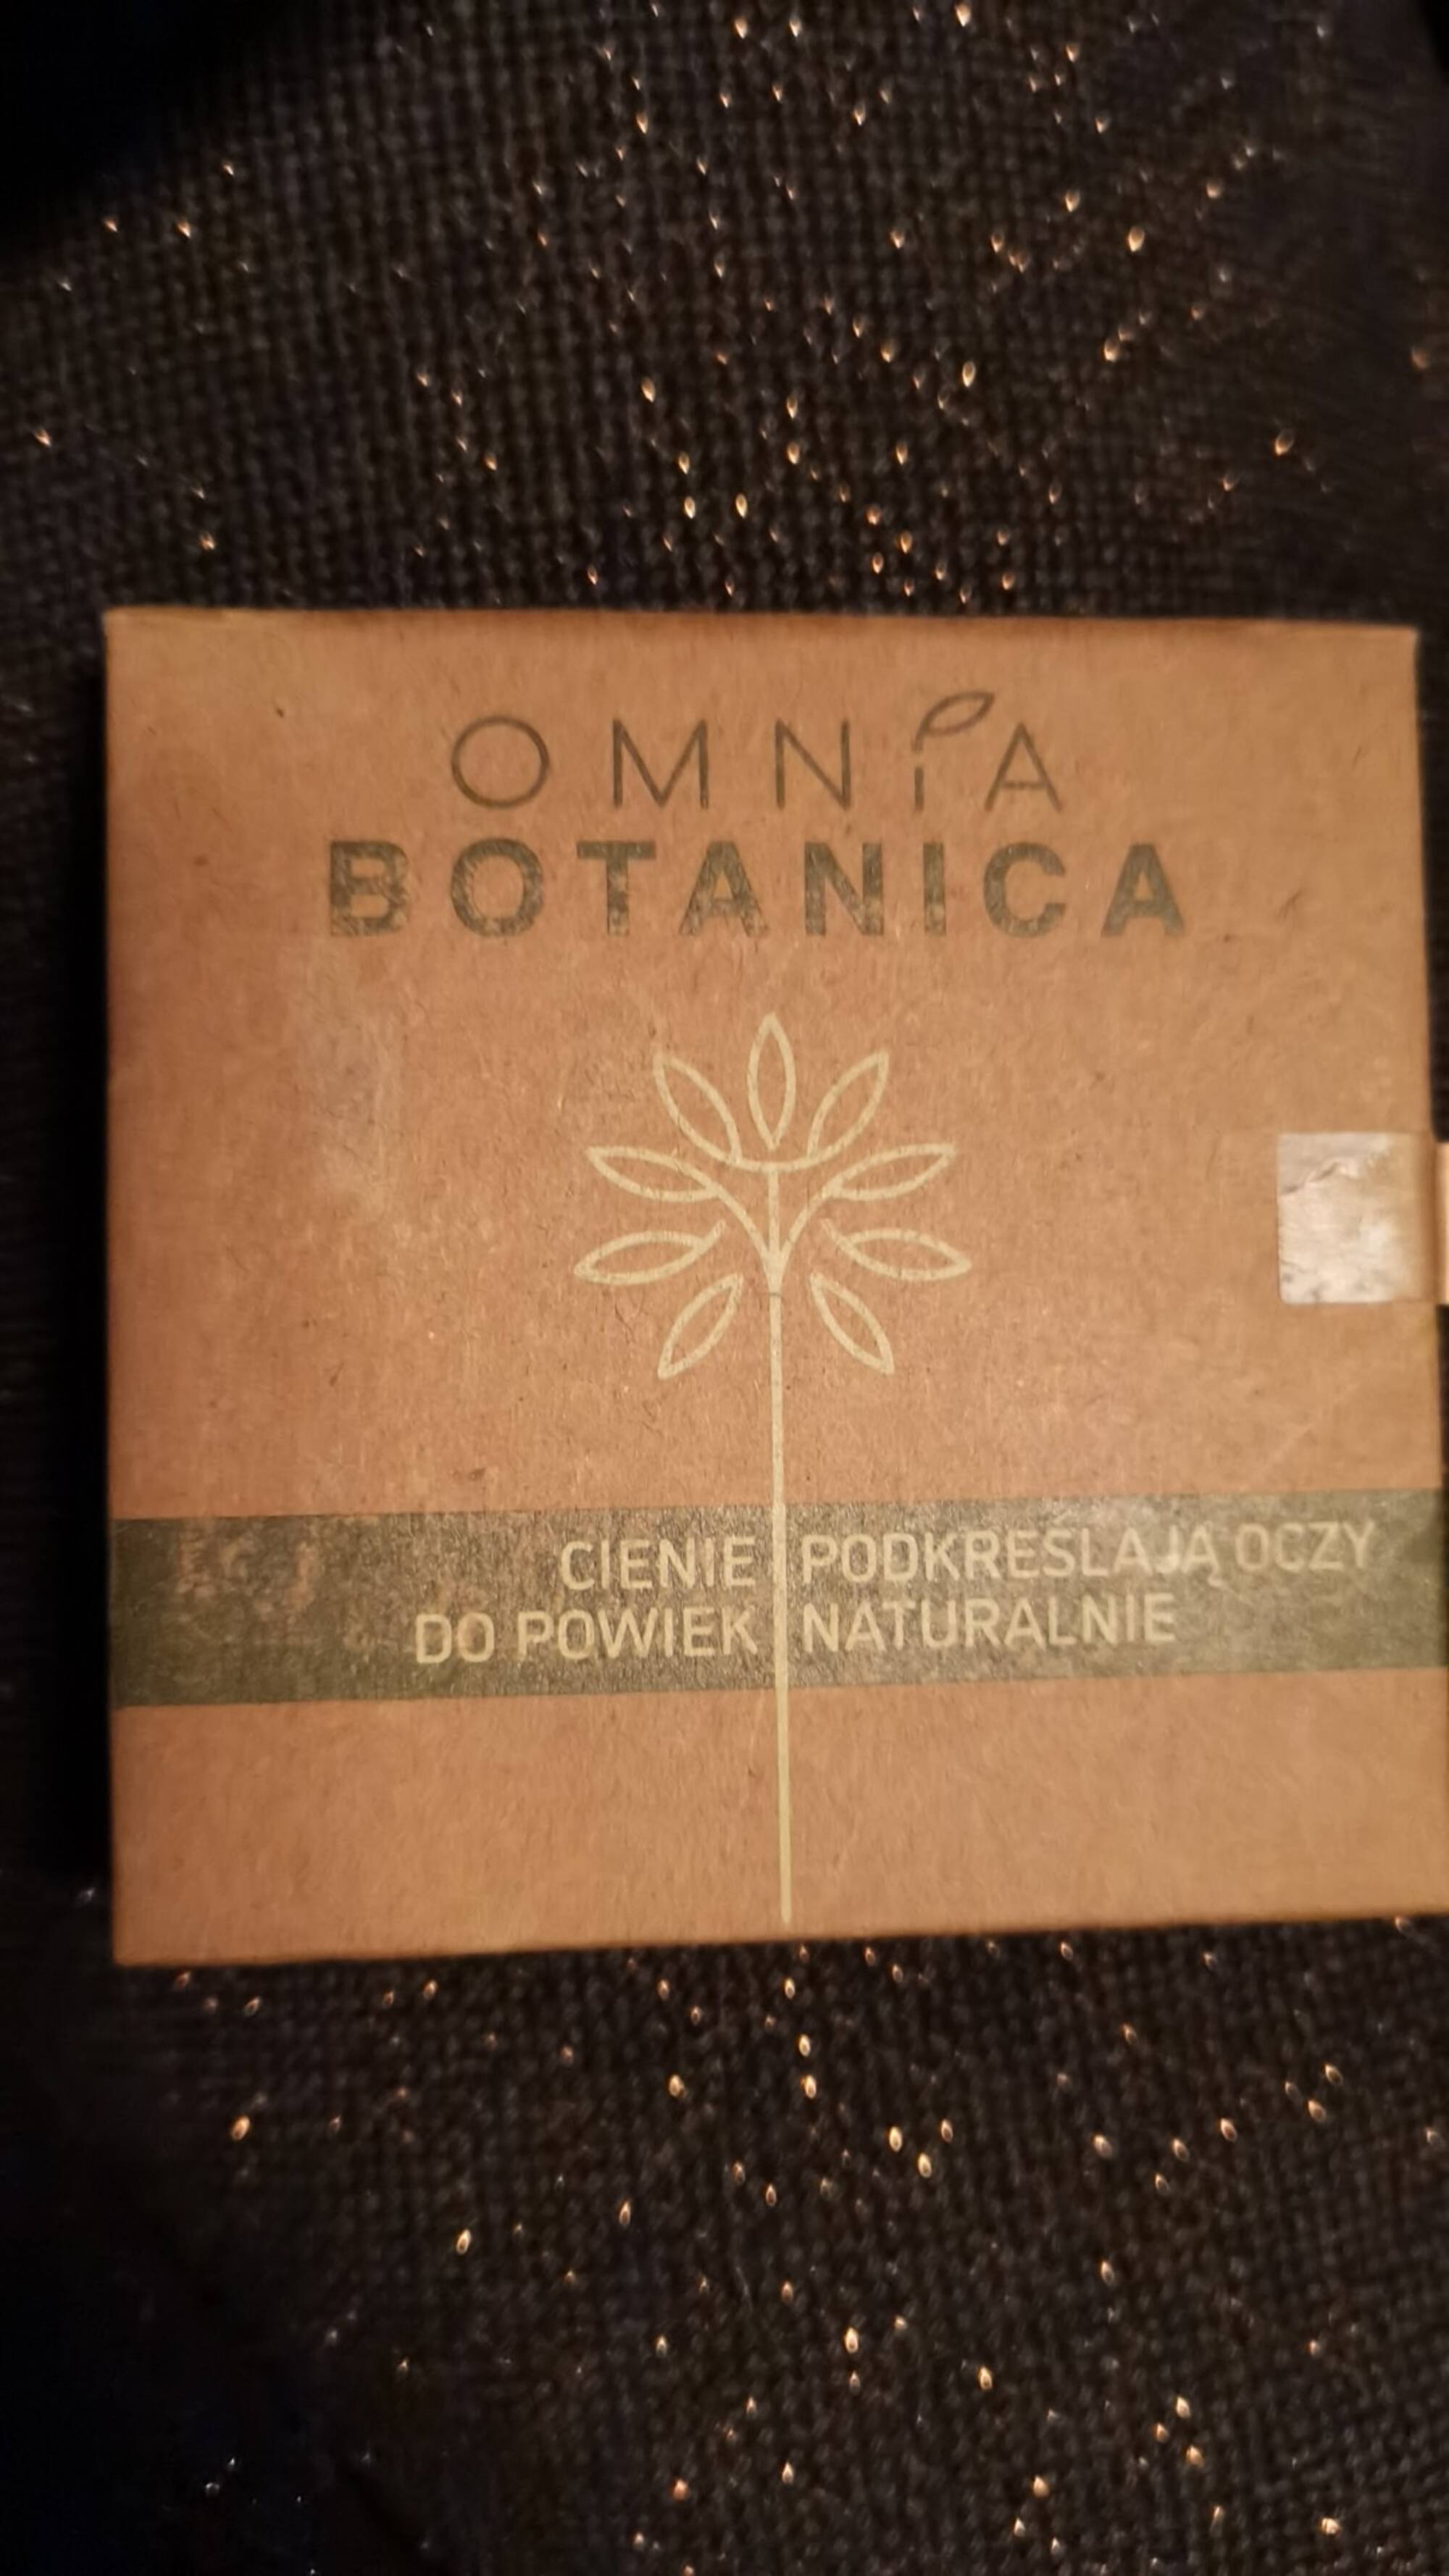 OMNIA BOTANICA - Cienie podkreslaja oczy do powierk naturalnie